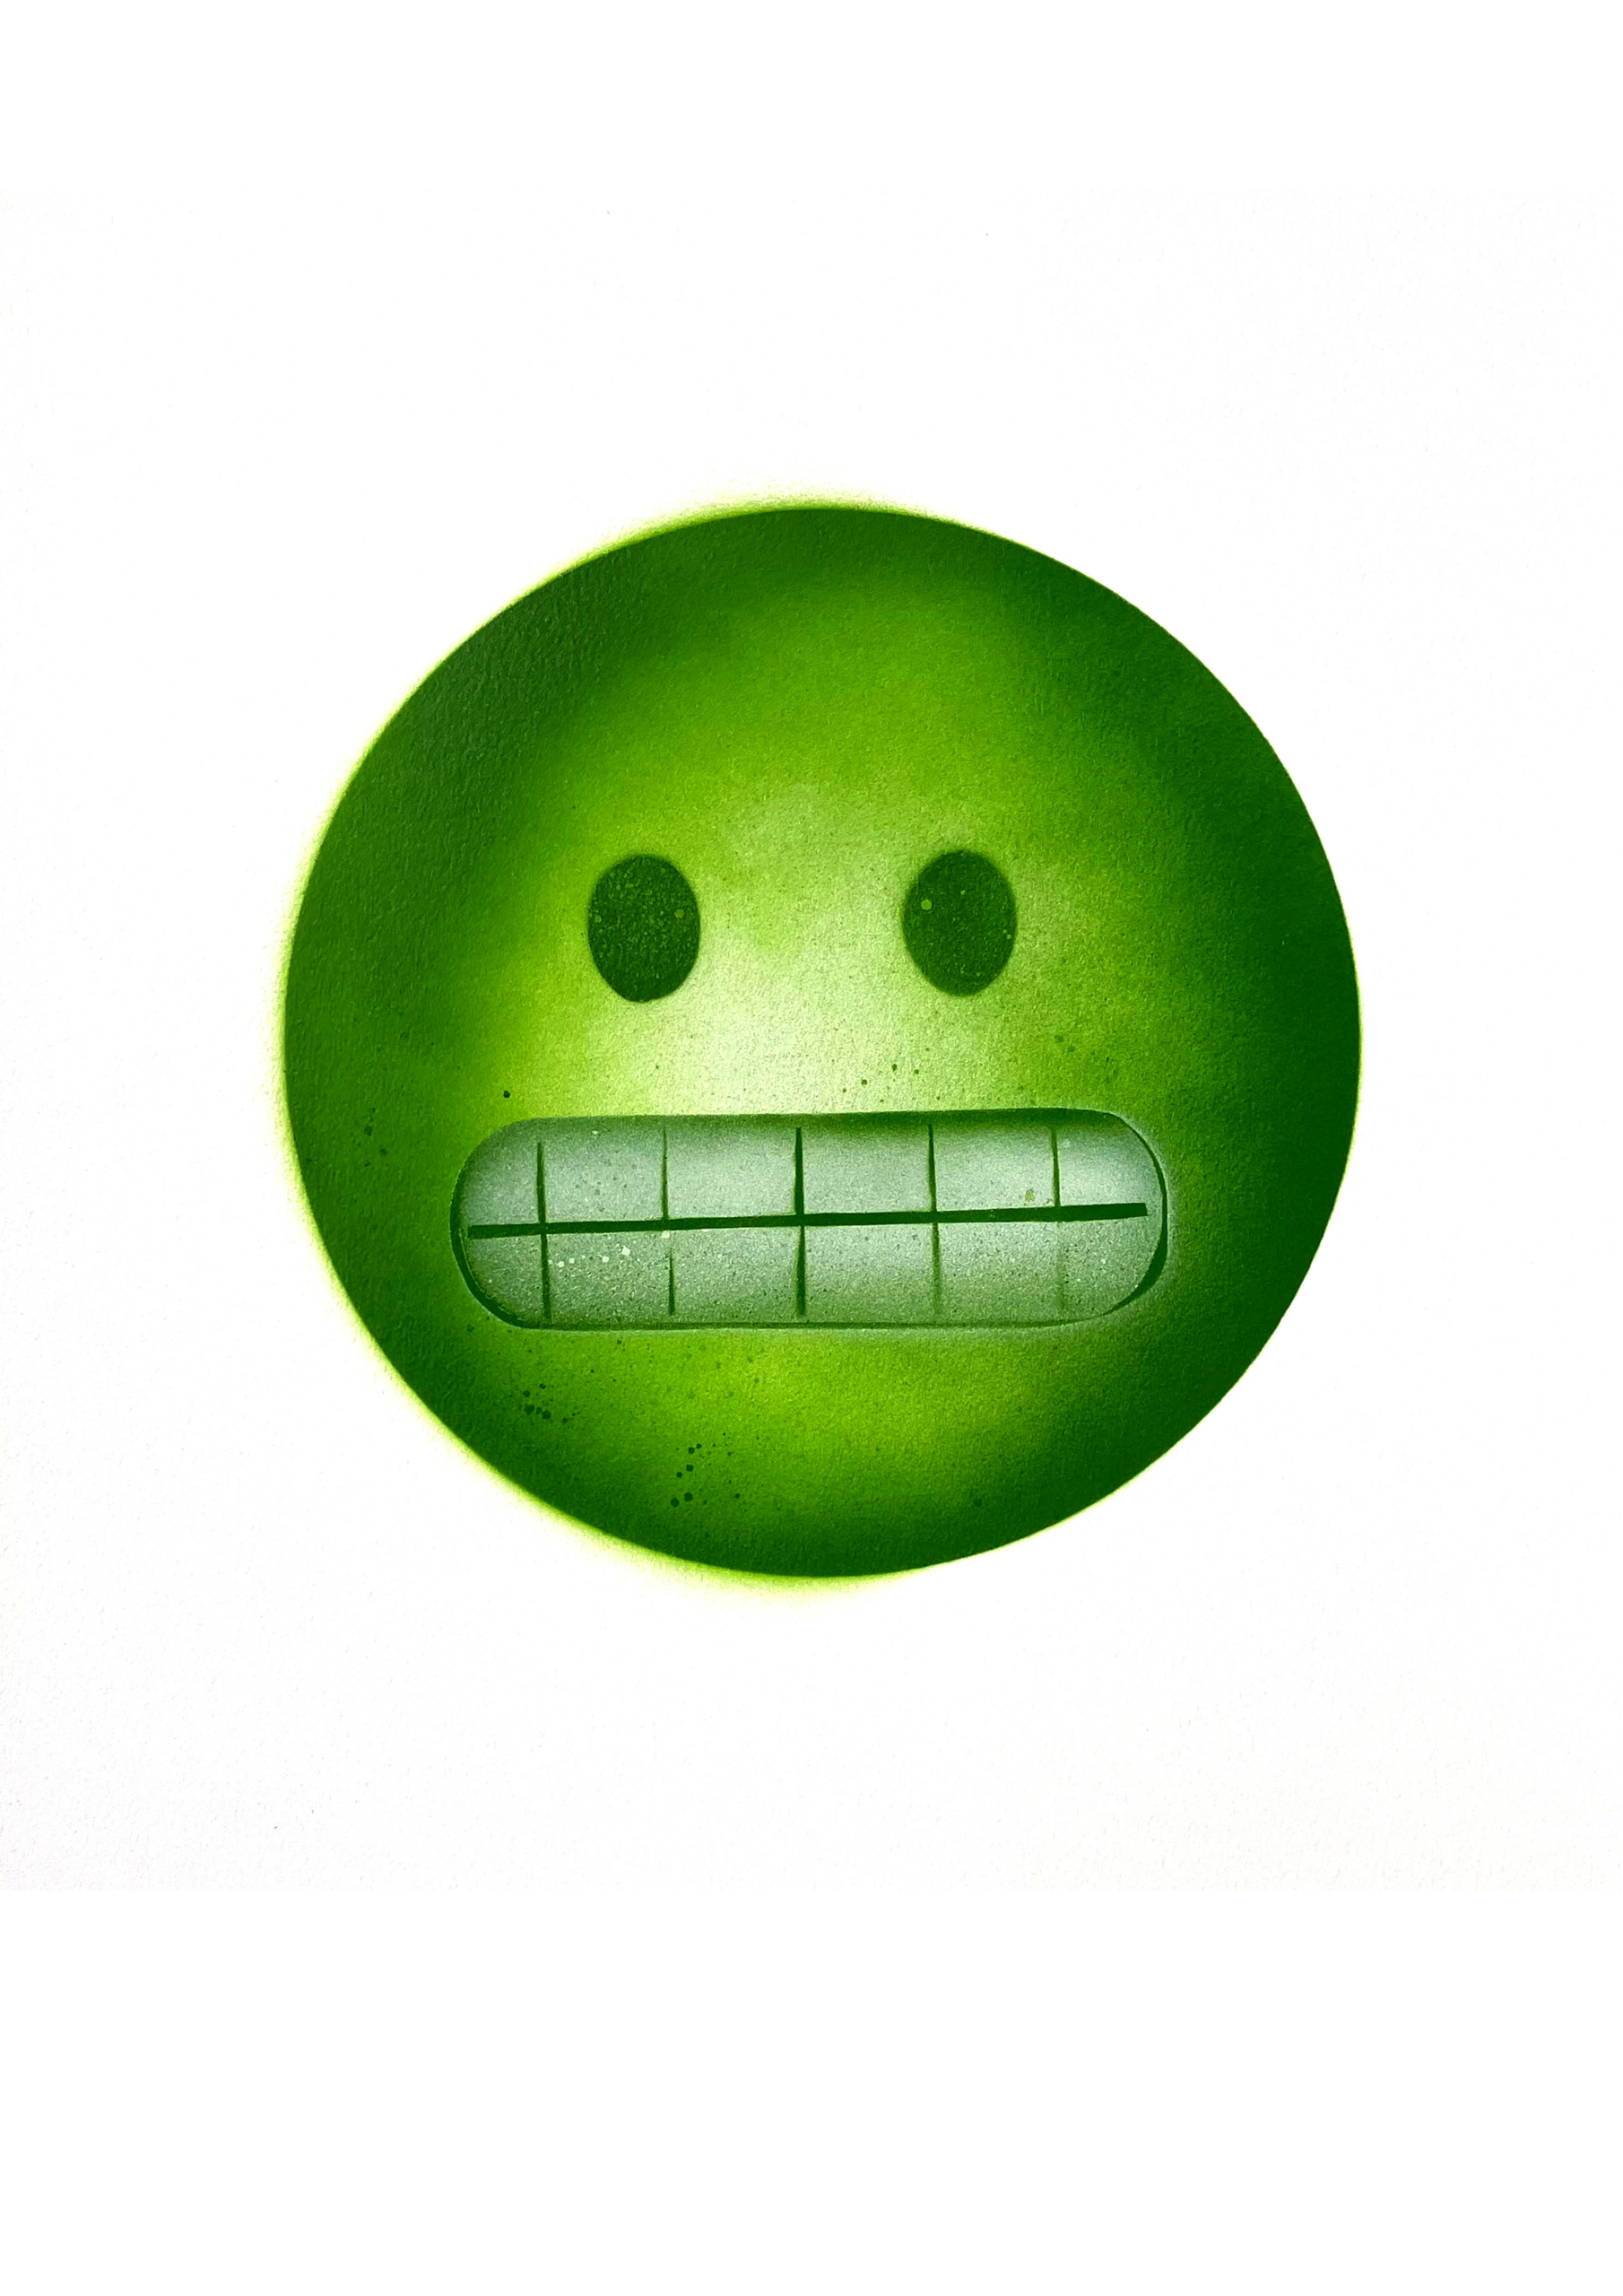 Green teeth emoji A3